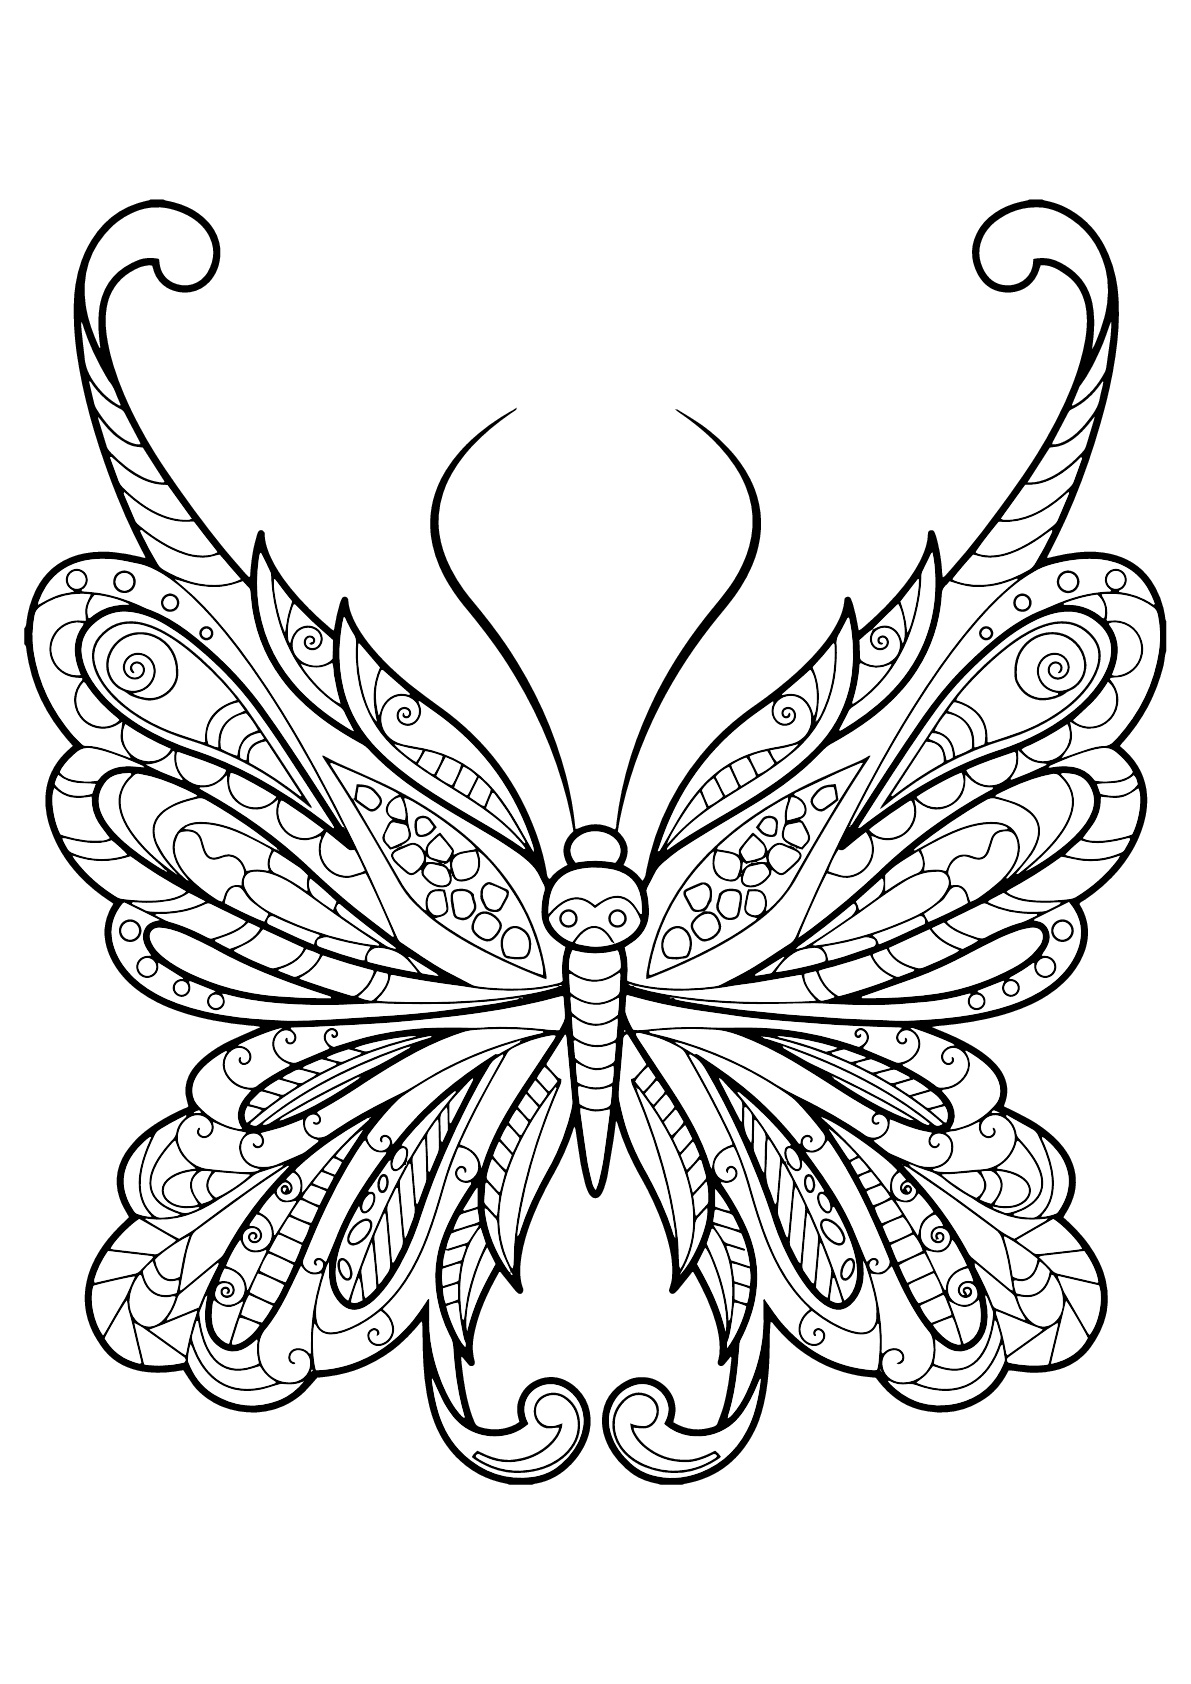 Coloriage De Papillons Pour Enfants - Coloriage De Papillons pour Photo De Papillon A Imprimer